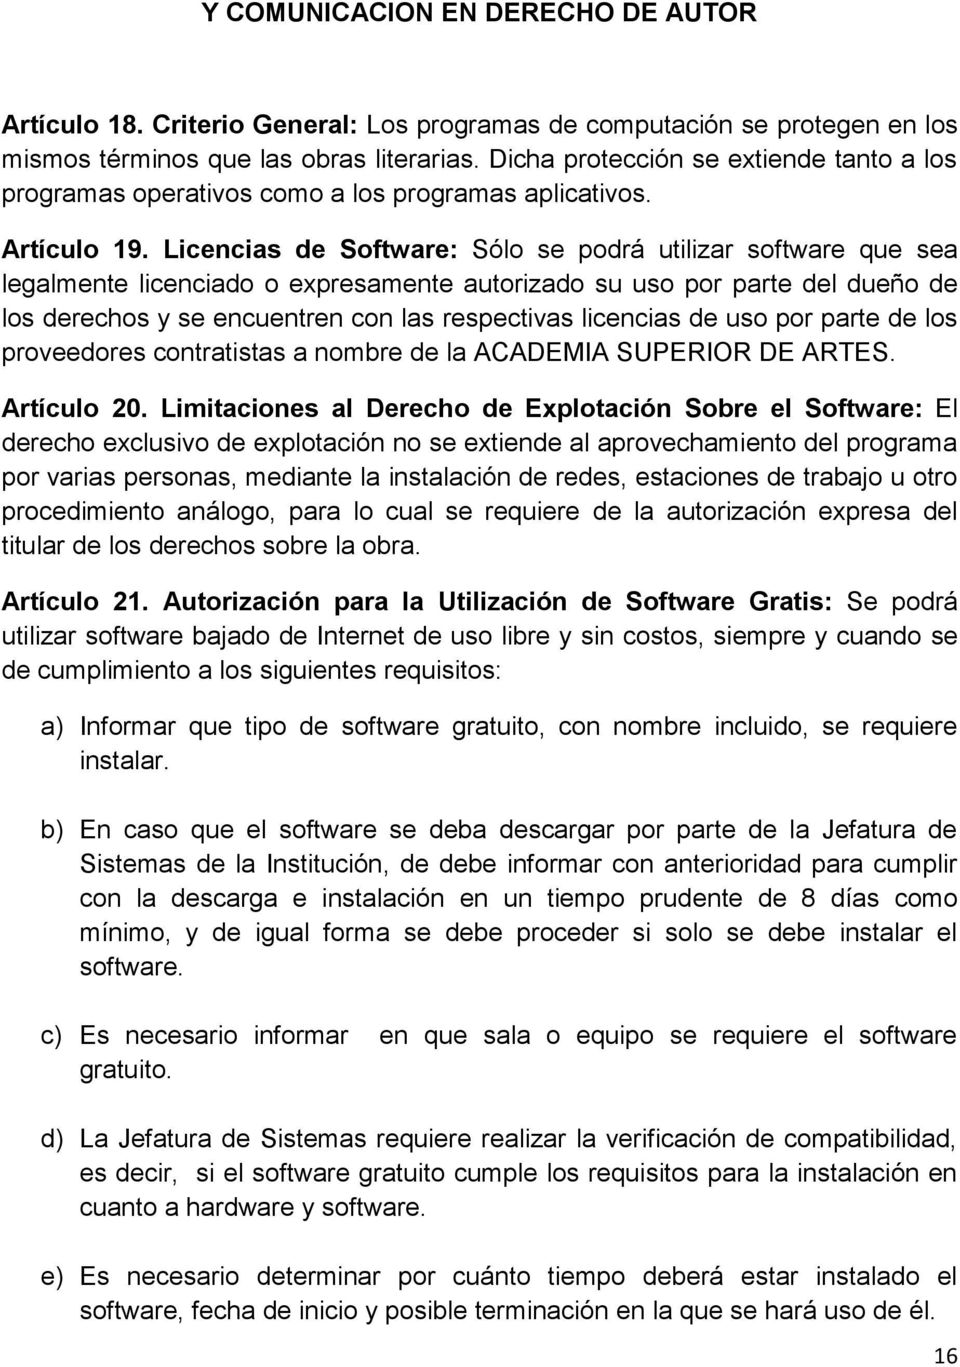 Licencias de Software: Sólo se podrá utilizar software que sea legalmente licenciado o expresamente autorizado su uso por parte del dueño de los derechos y se encuentren con las respectivas licencias